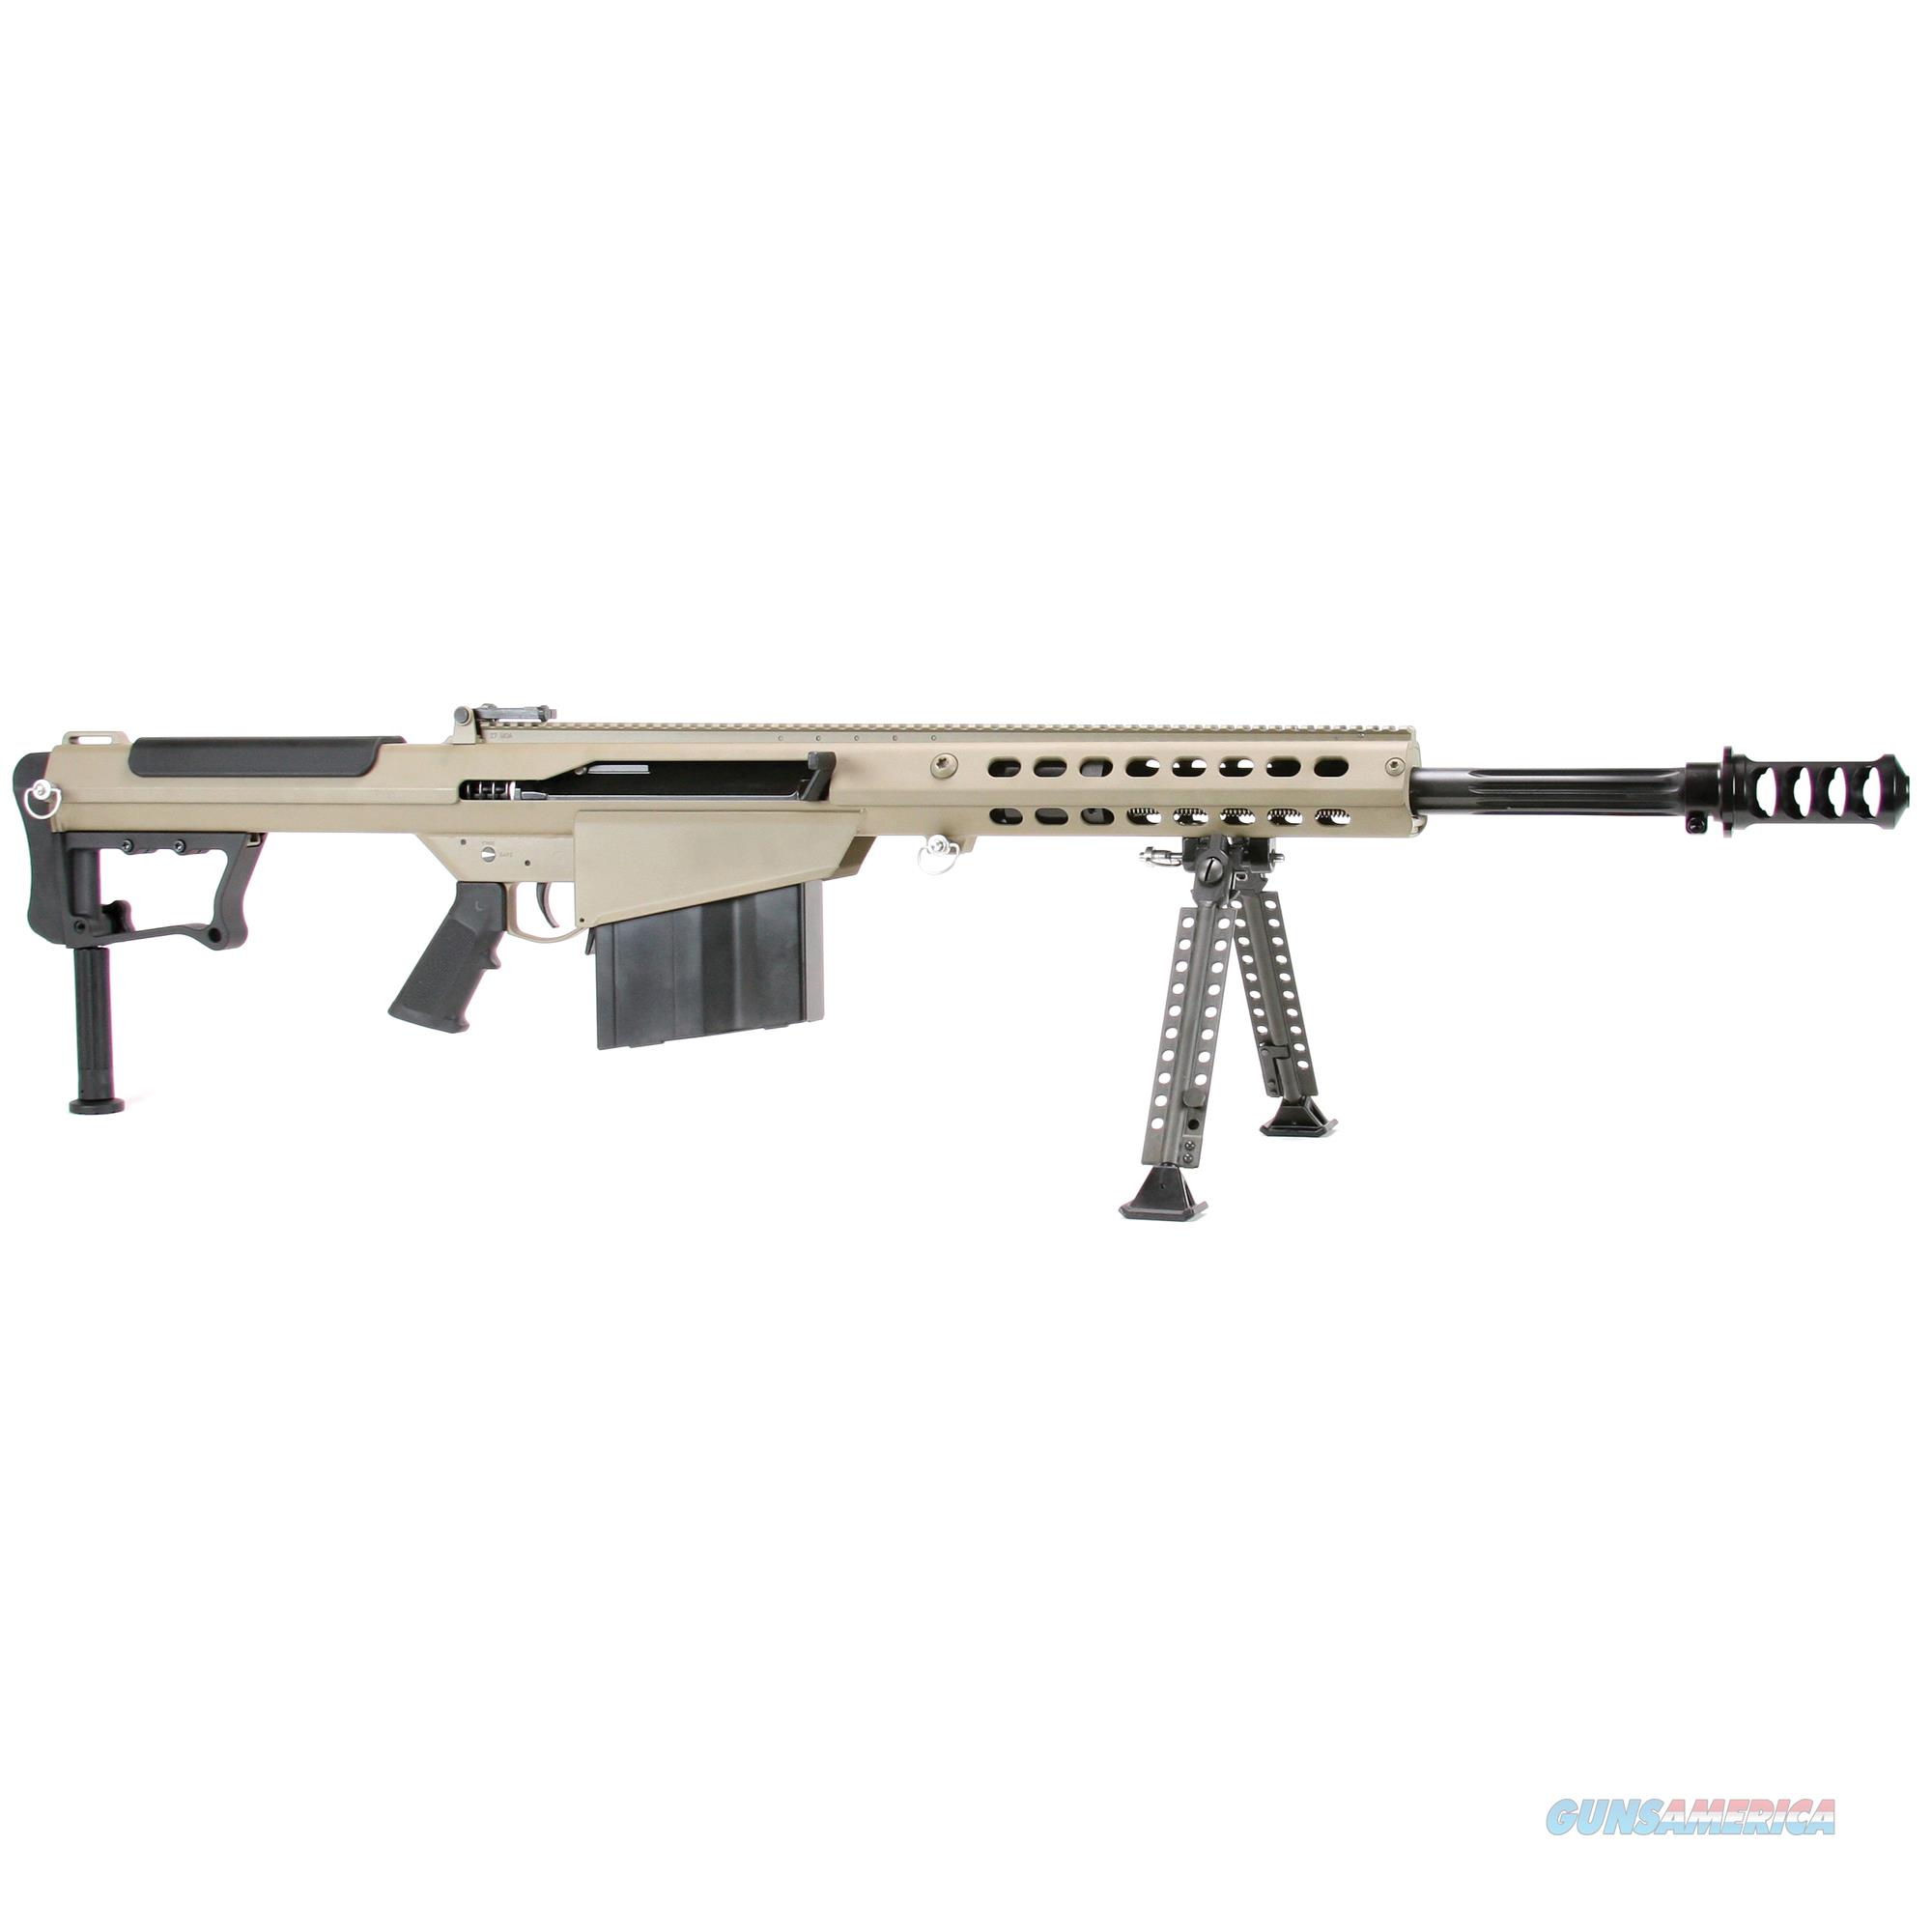 Barrett Firearms M107A1 50BMG Suppr... for sale at Gunsamerica.com ...